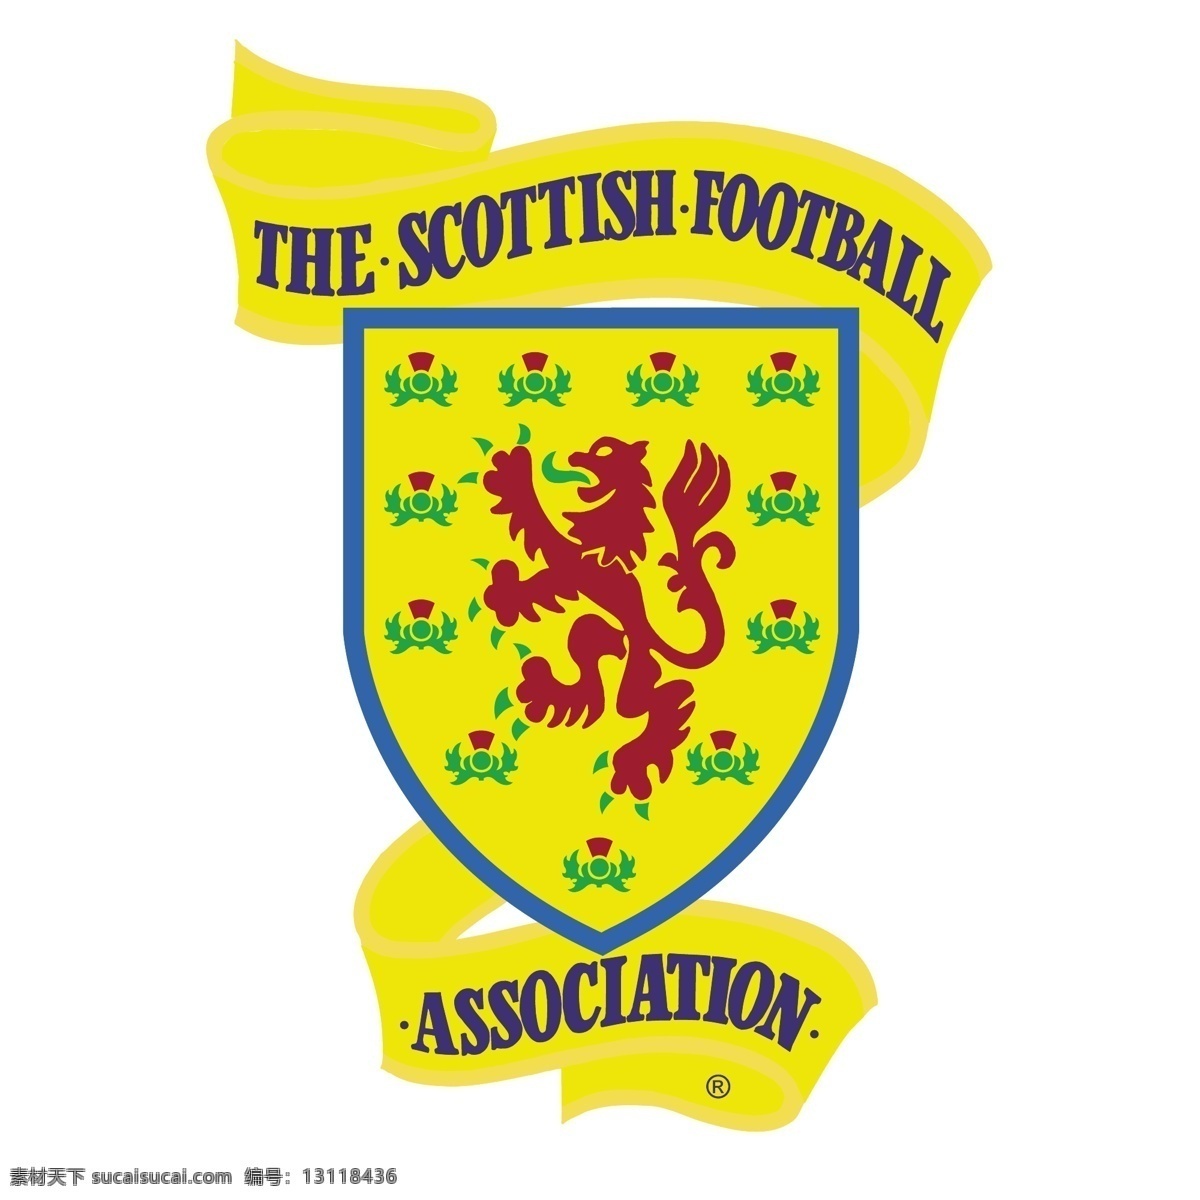 苏格兰 足球 协会 标识 公司 免费 品牌 品牌标识 商标 矢量标志下载 免费矢量标识 矢量 psd源文件 logo设计